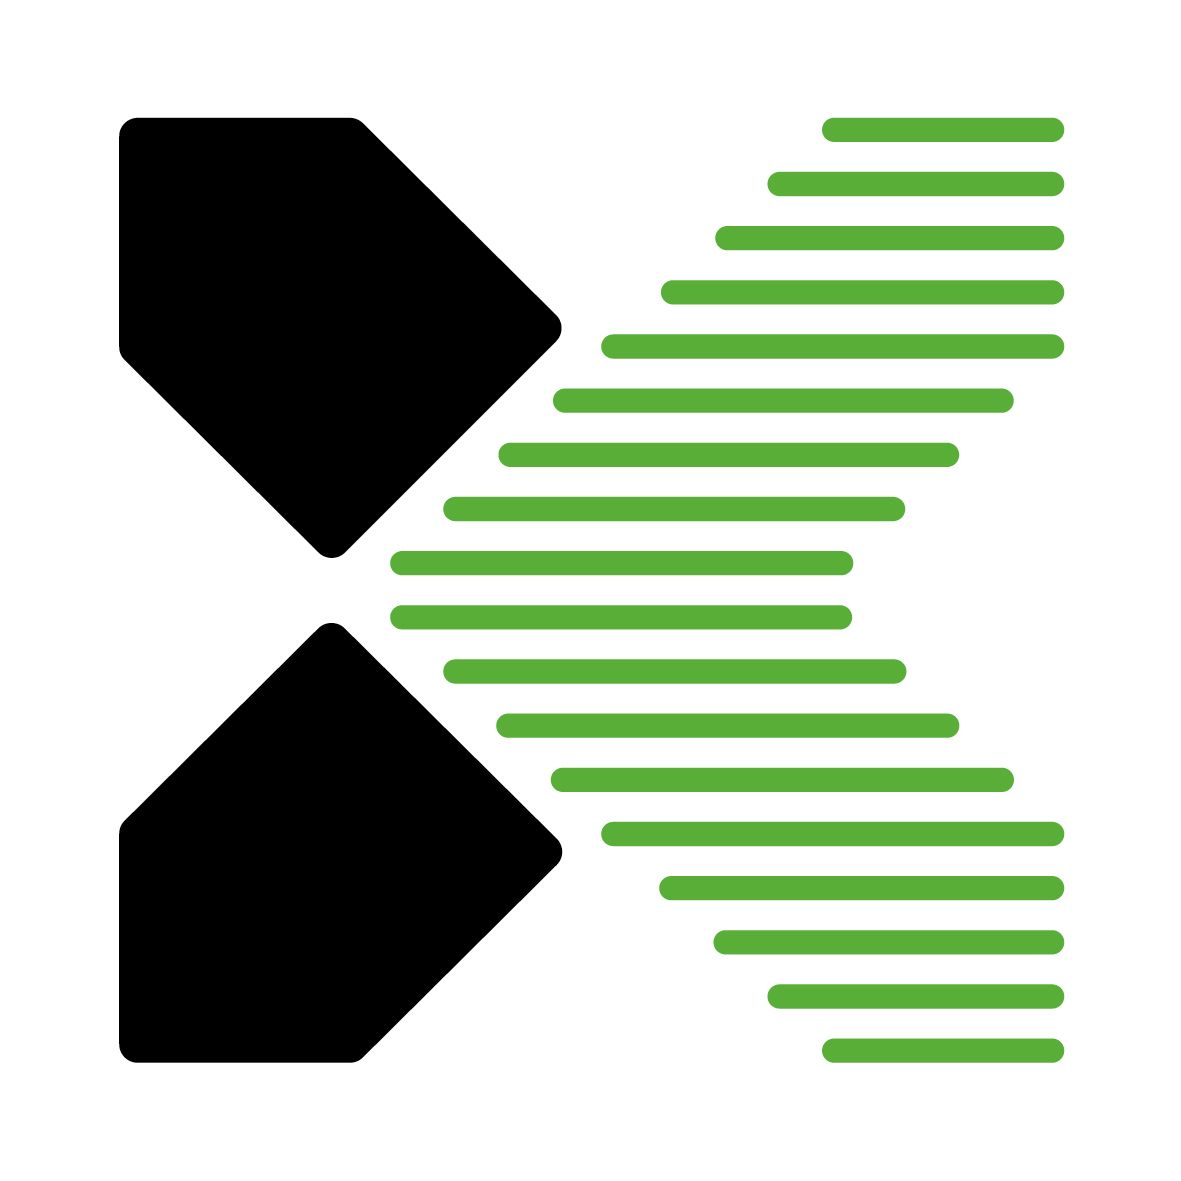 Das ist das grüne Cross Composite Logo von CrossTEQ